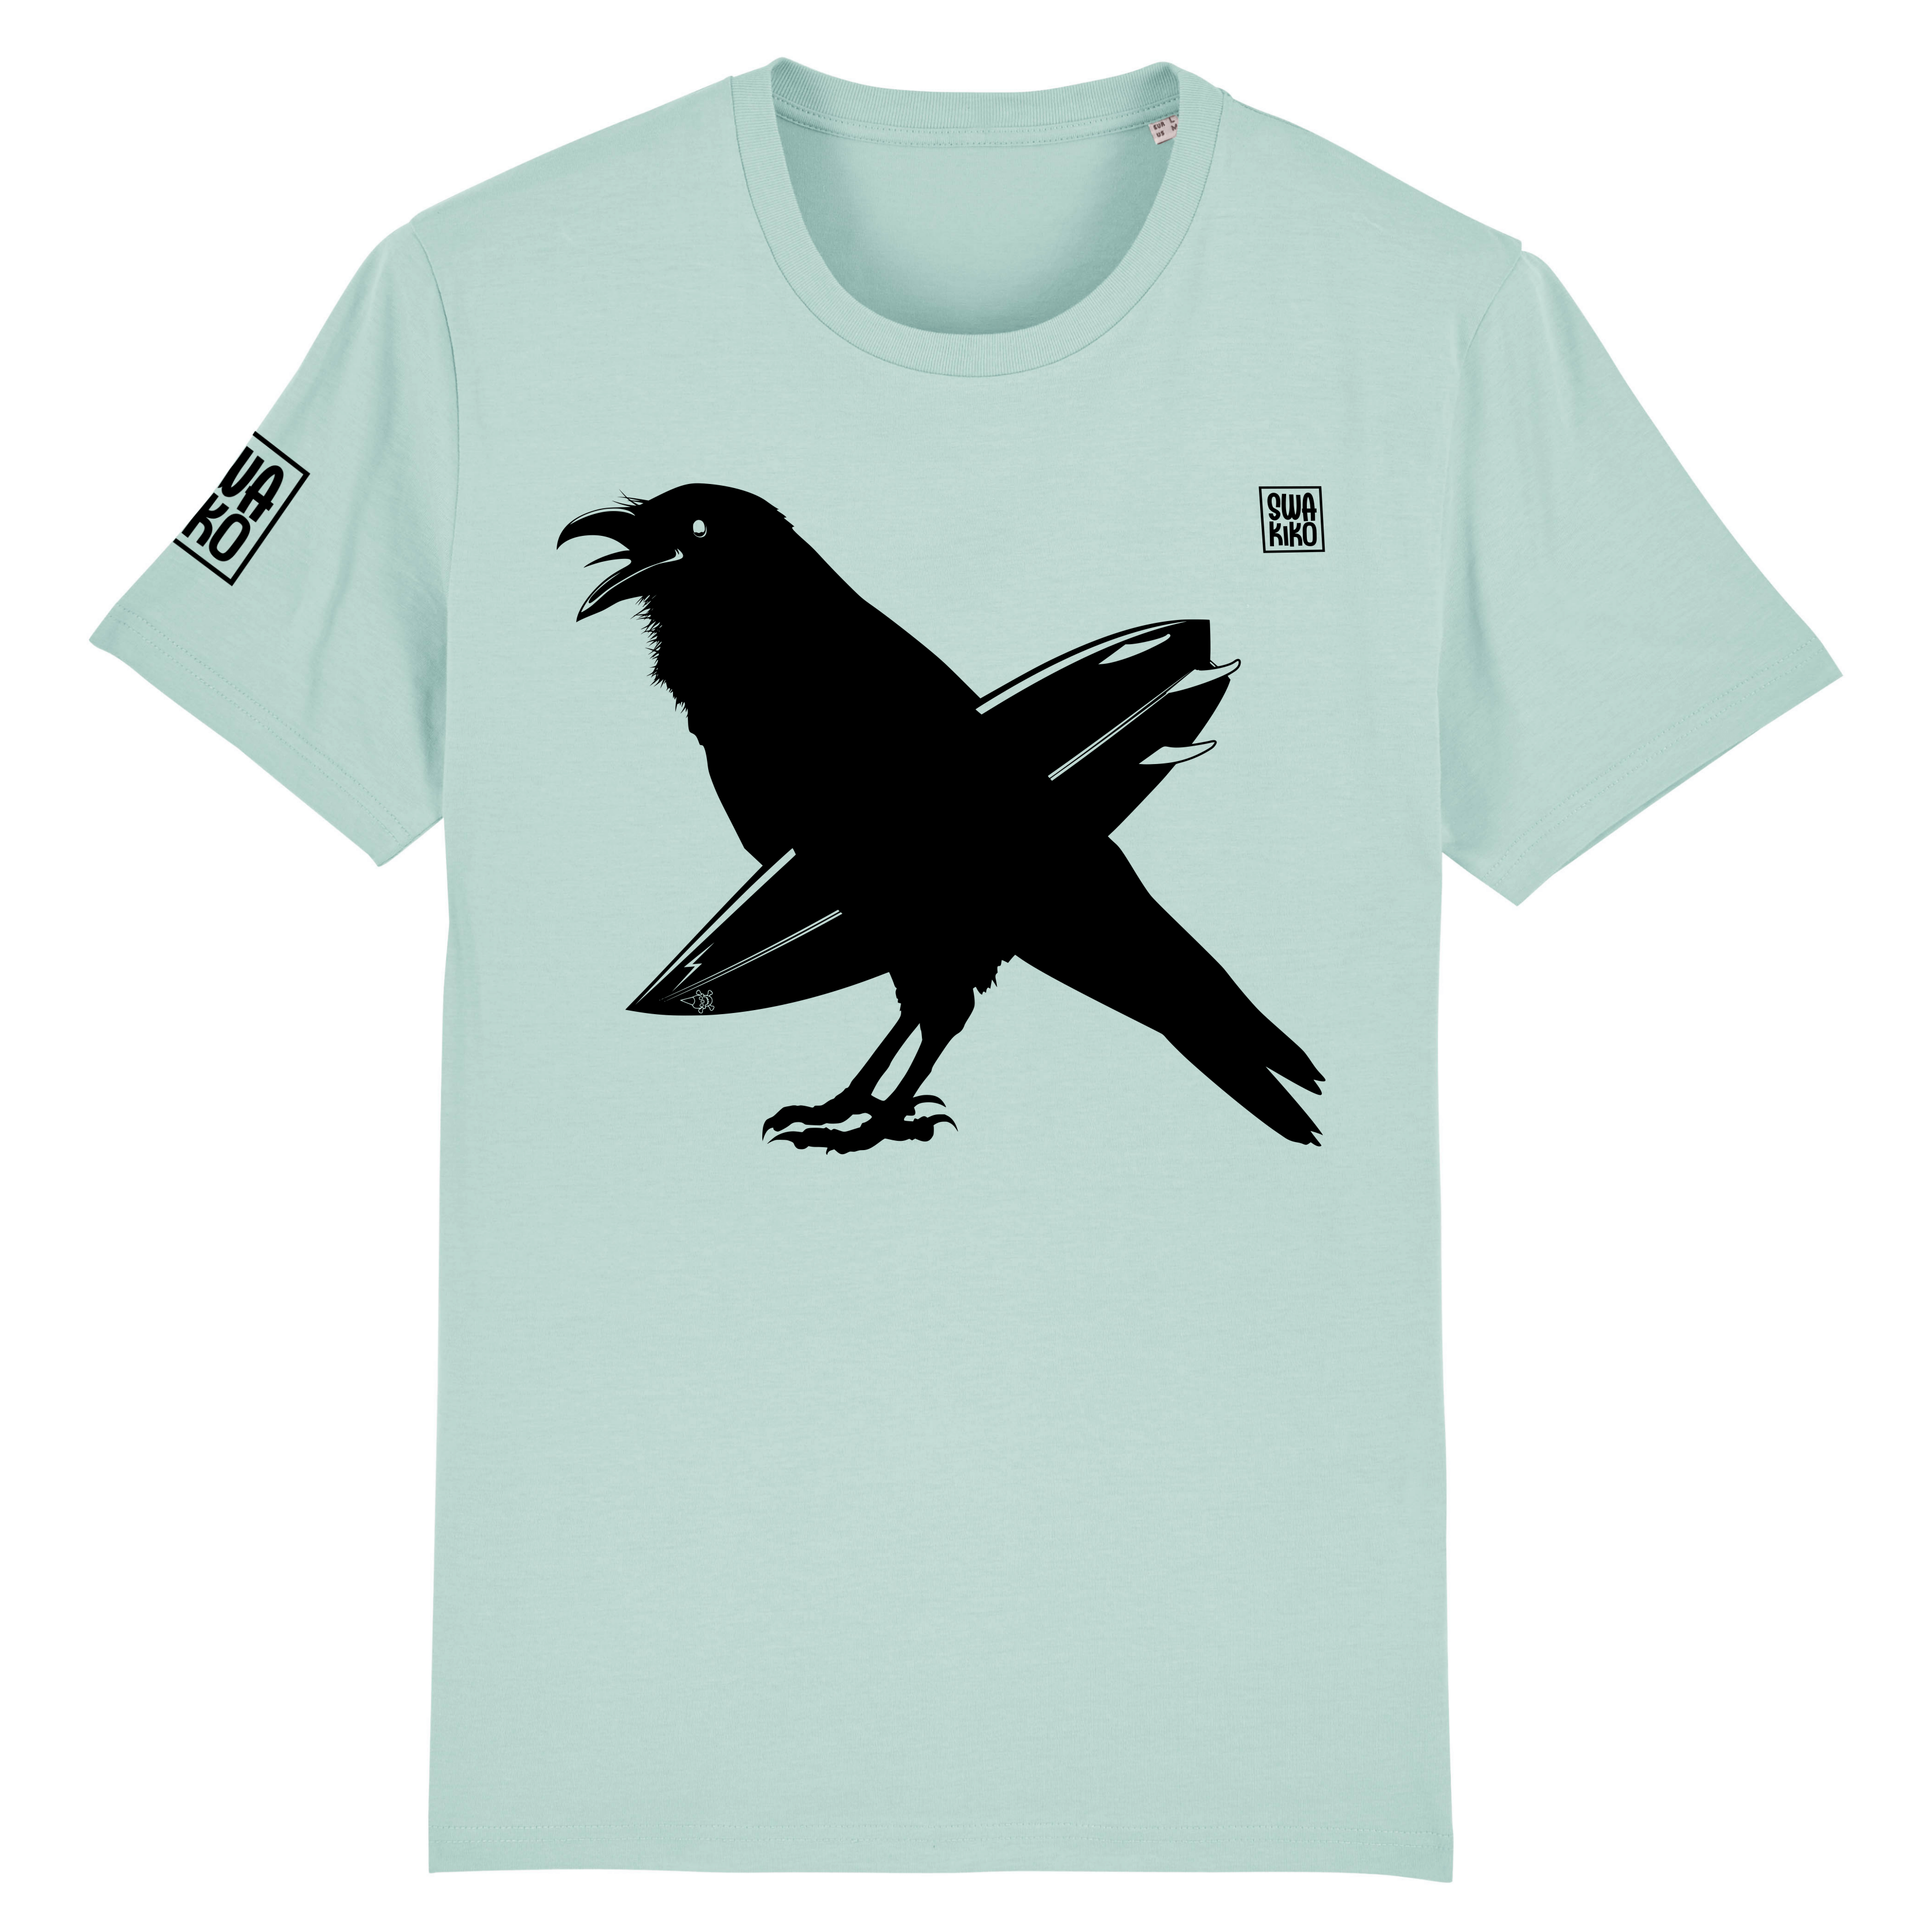 Turquoise T-shirt met zwarte kraai en surfboard onder zijn vleugel